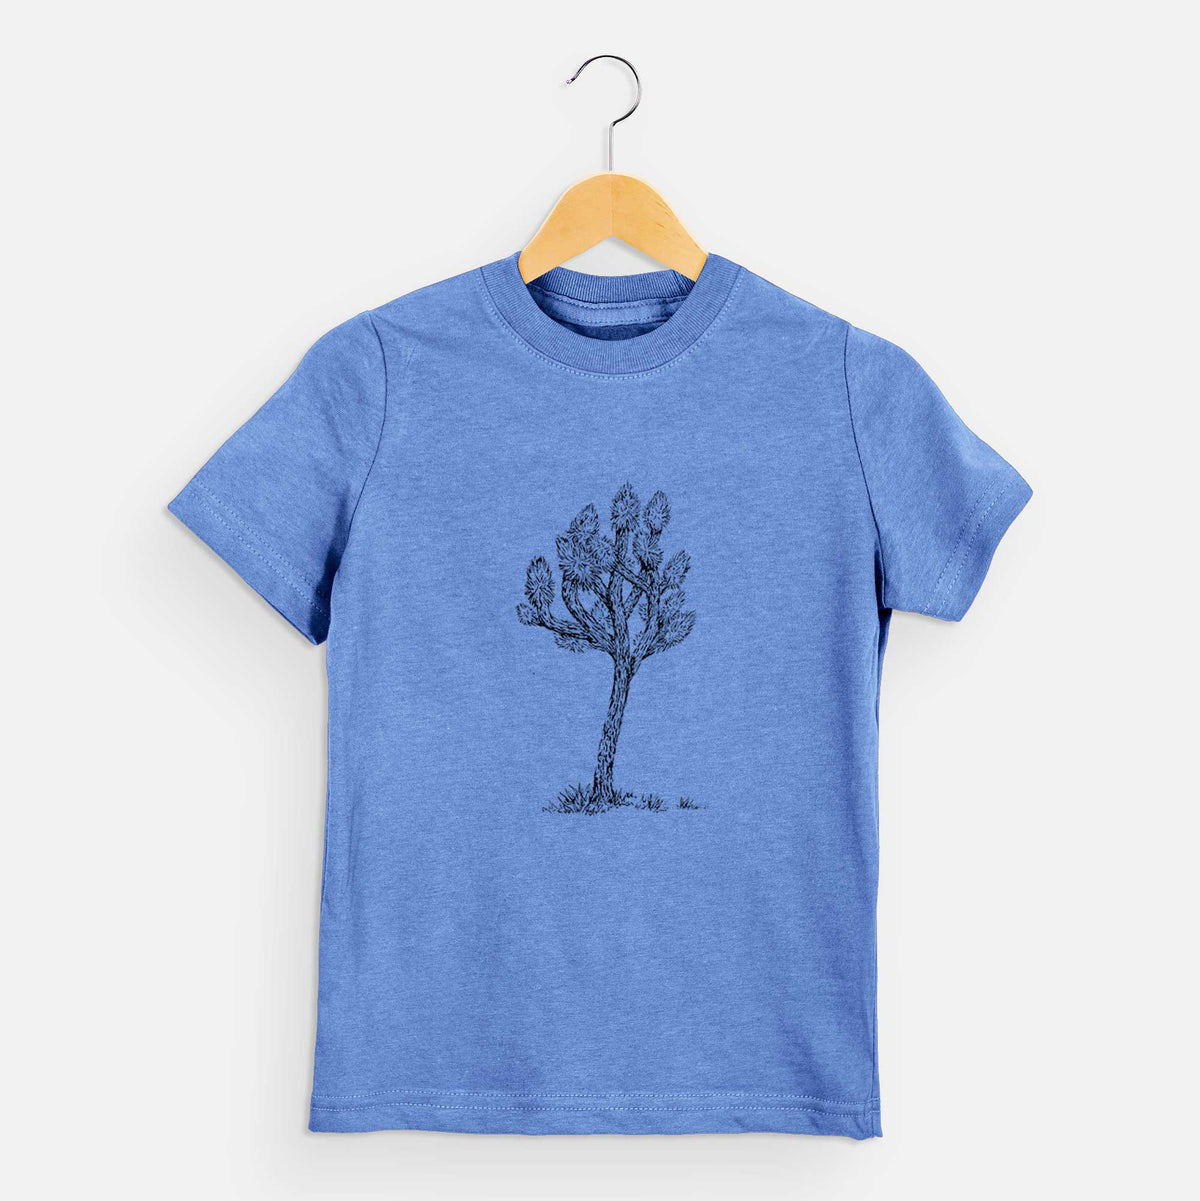 Yucca brevifolia - Joshua Tree - Kids Shirt